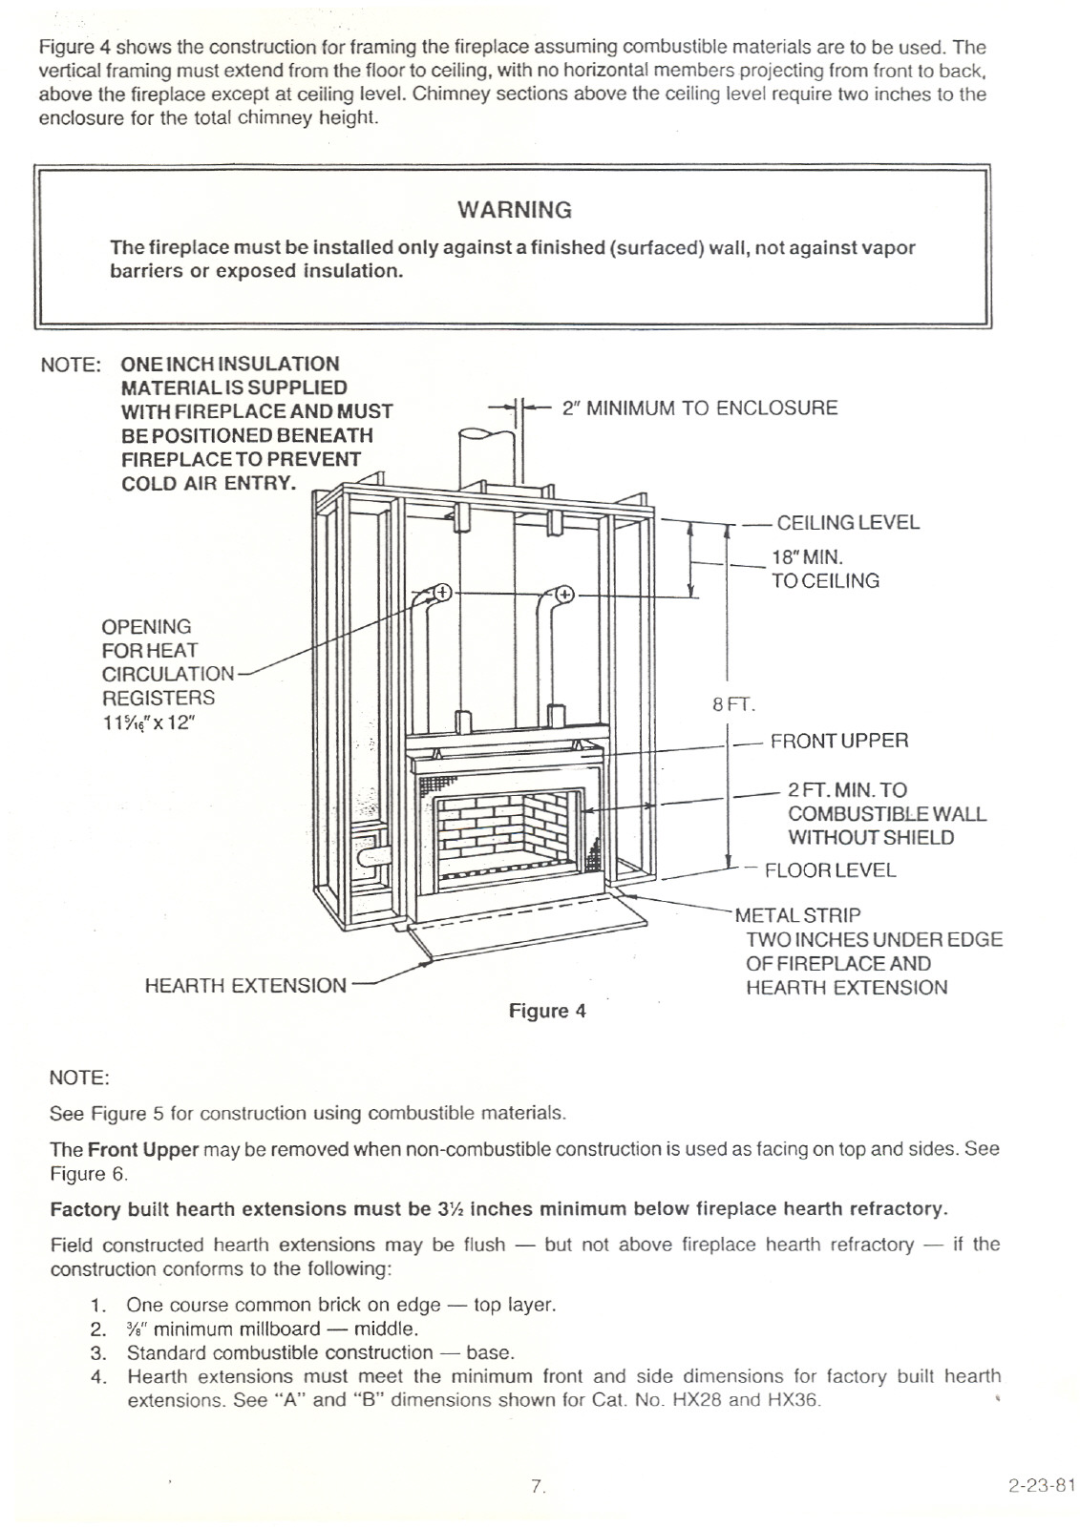 Heatiator FP28 manual 